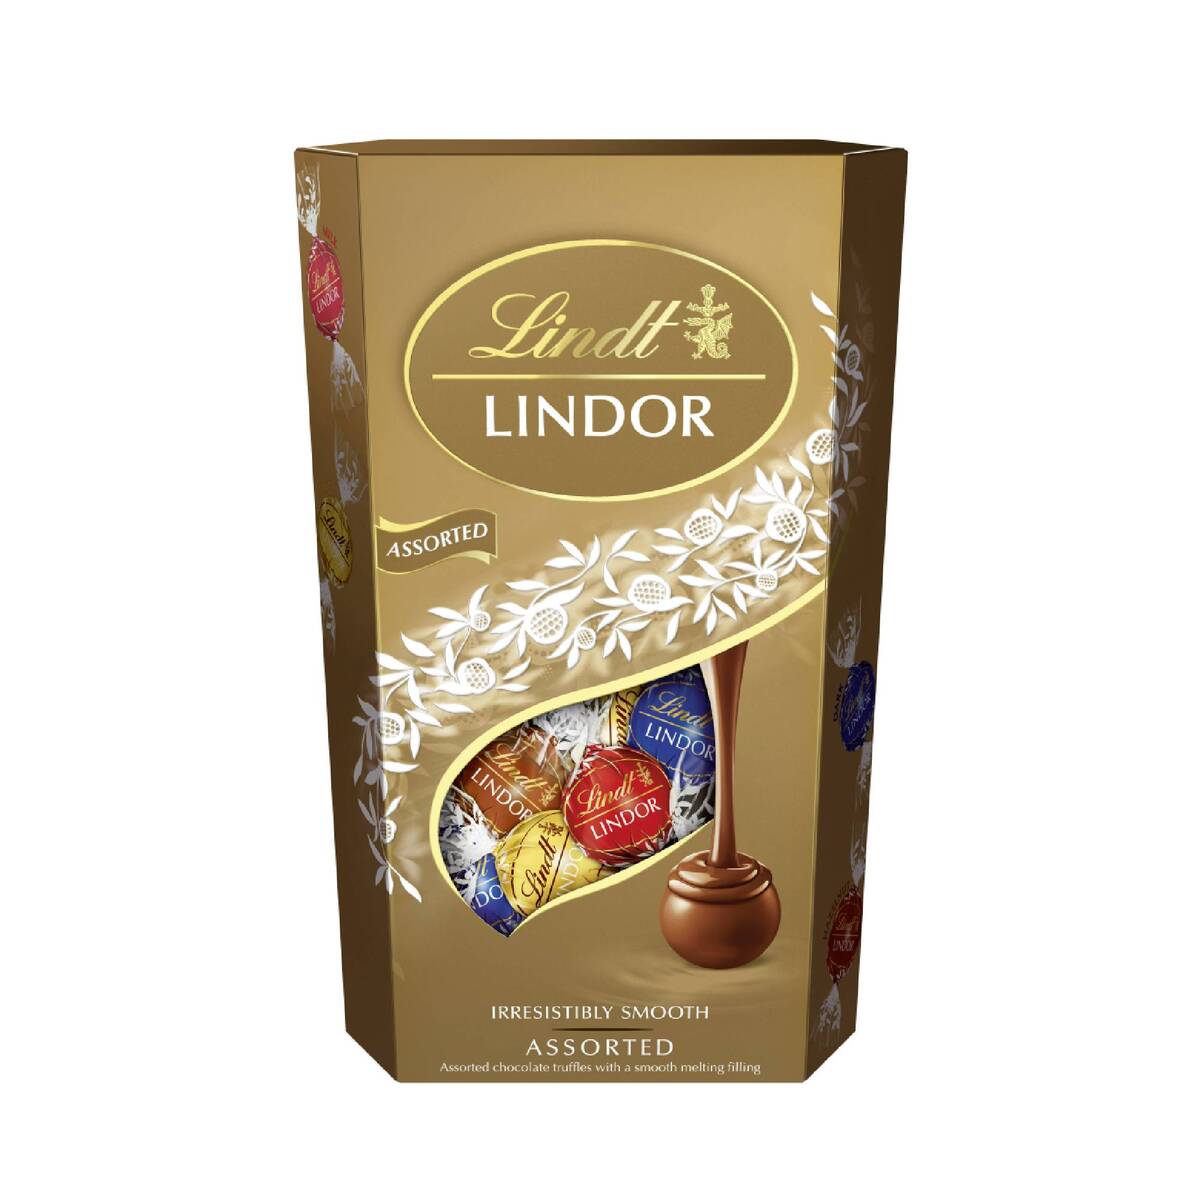 ليندت ليندور شوكولاتة متنوعة ناعمة بشكل لا يقاوم, 600 جم